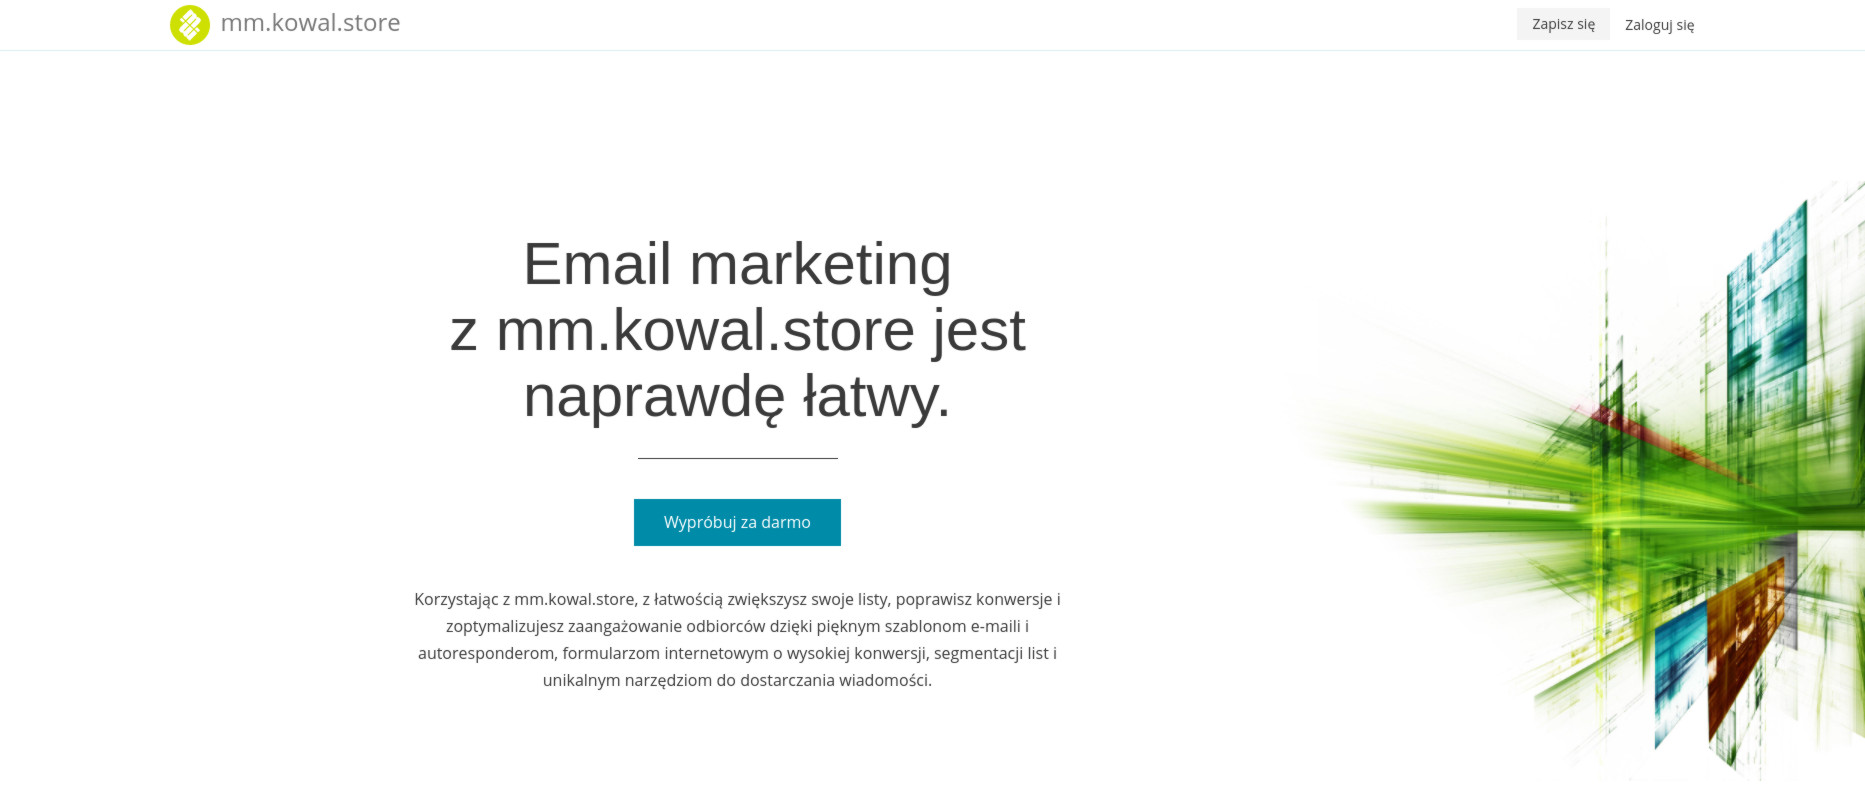 mm.kowal.store - Efektywny marketing mailowy